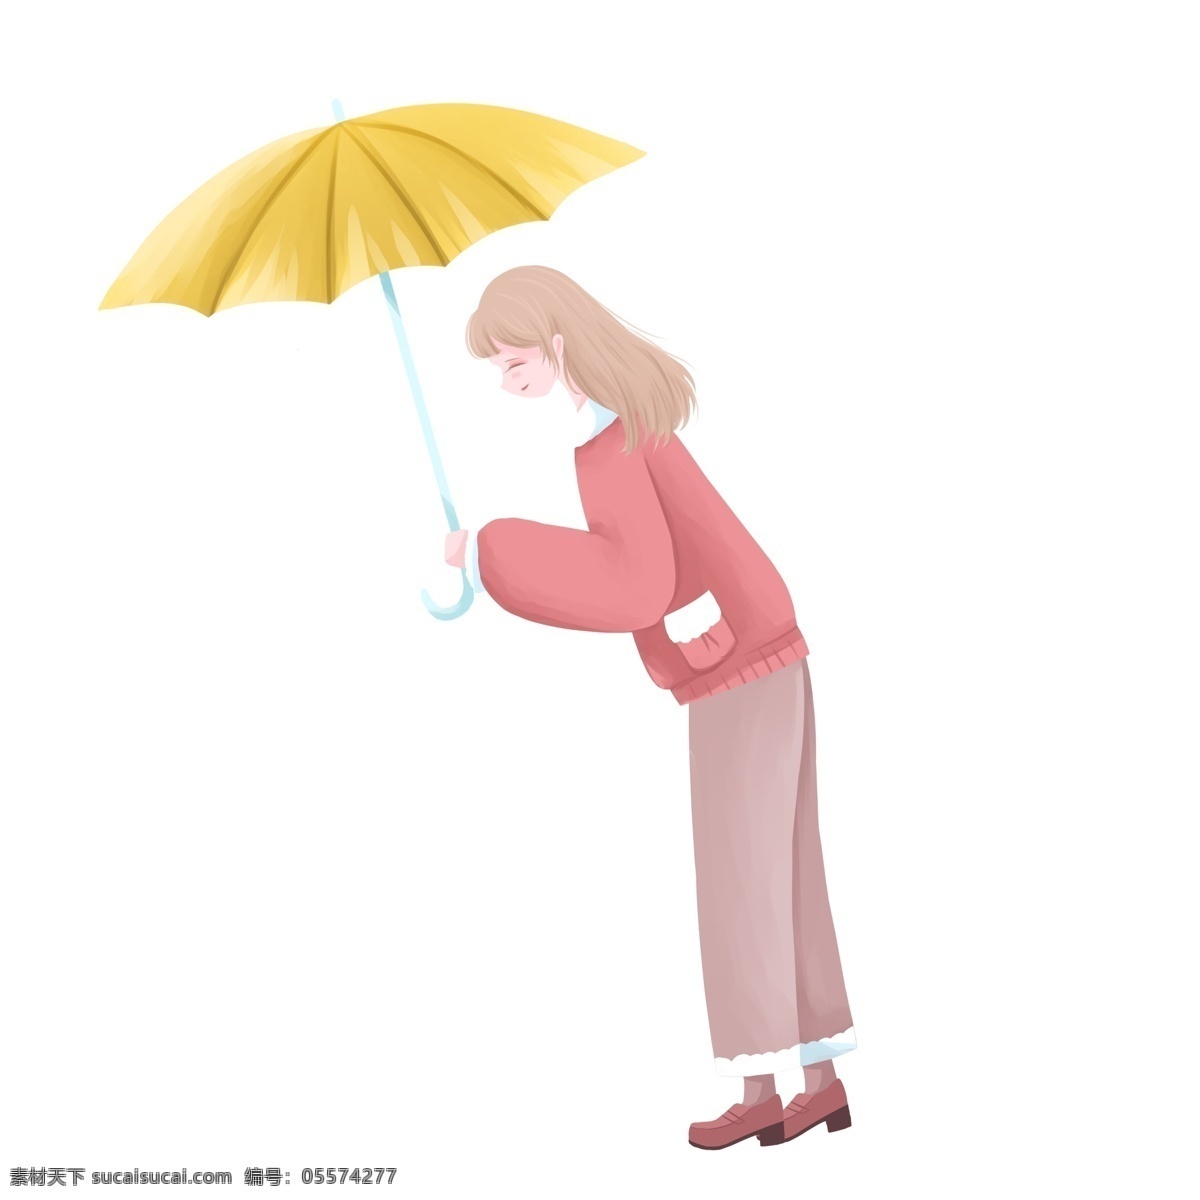 手 雨伞 的卡 通 人物 图案 女孩 卡通人物 简约 设计元素 手绘 装饰图案 元素设计 创意元素